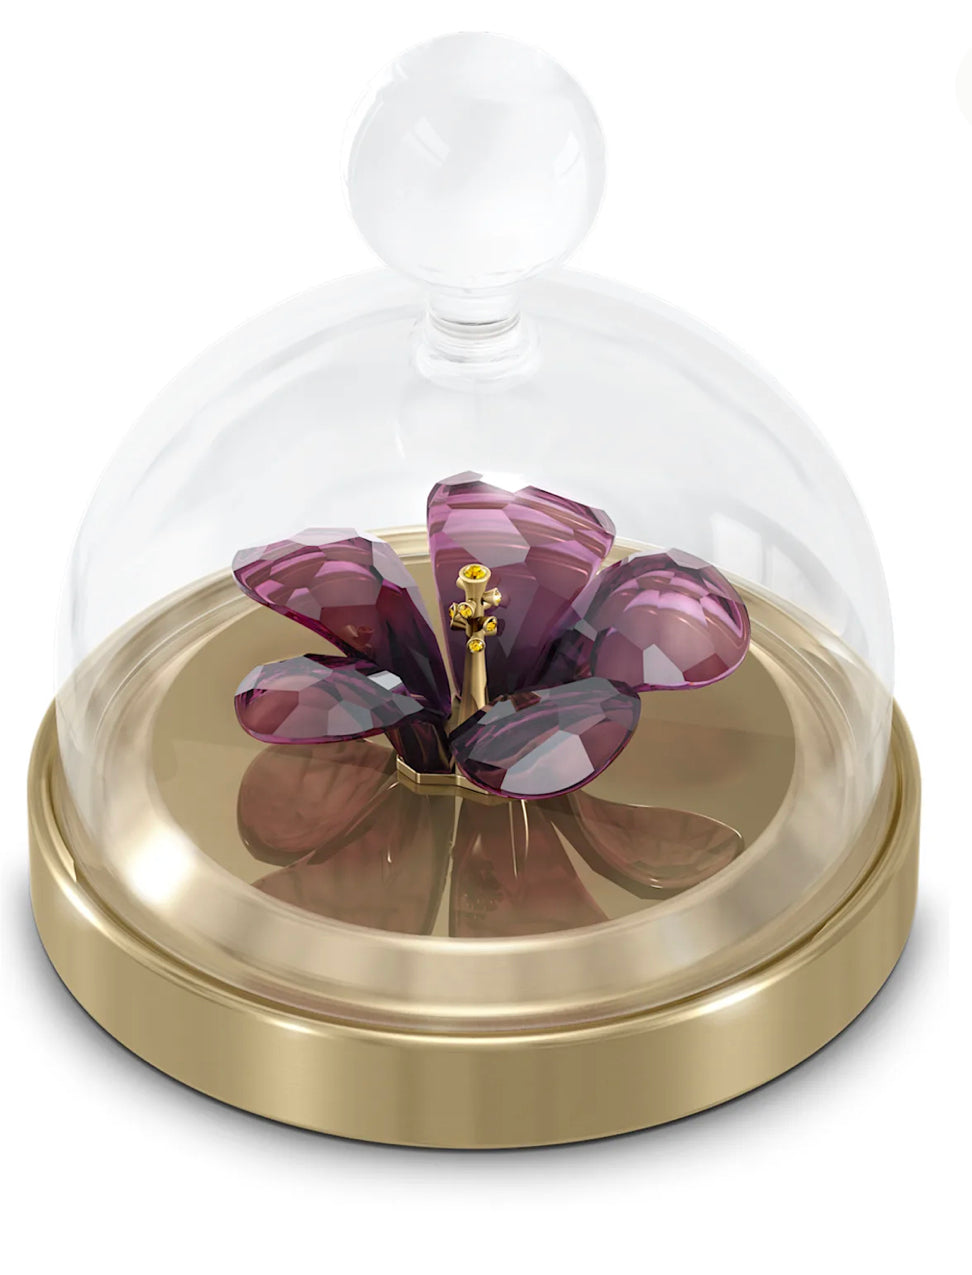 Swarovski Garden Tales: Bell Jar Hibiscus - 5619224- Discontinued